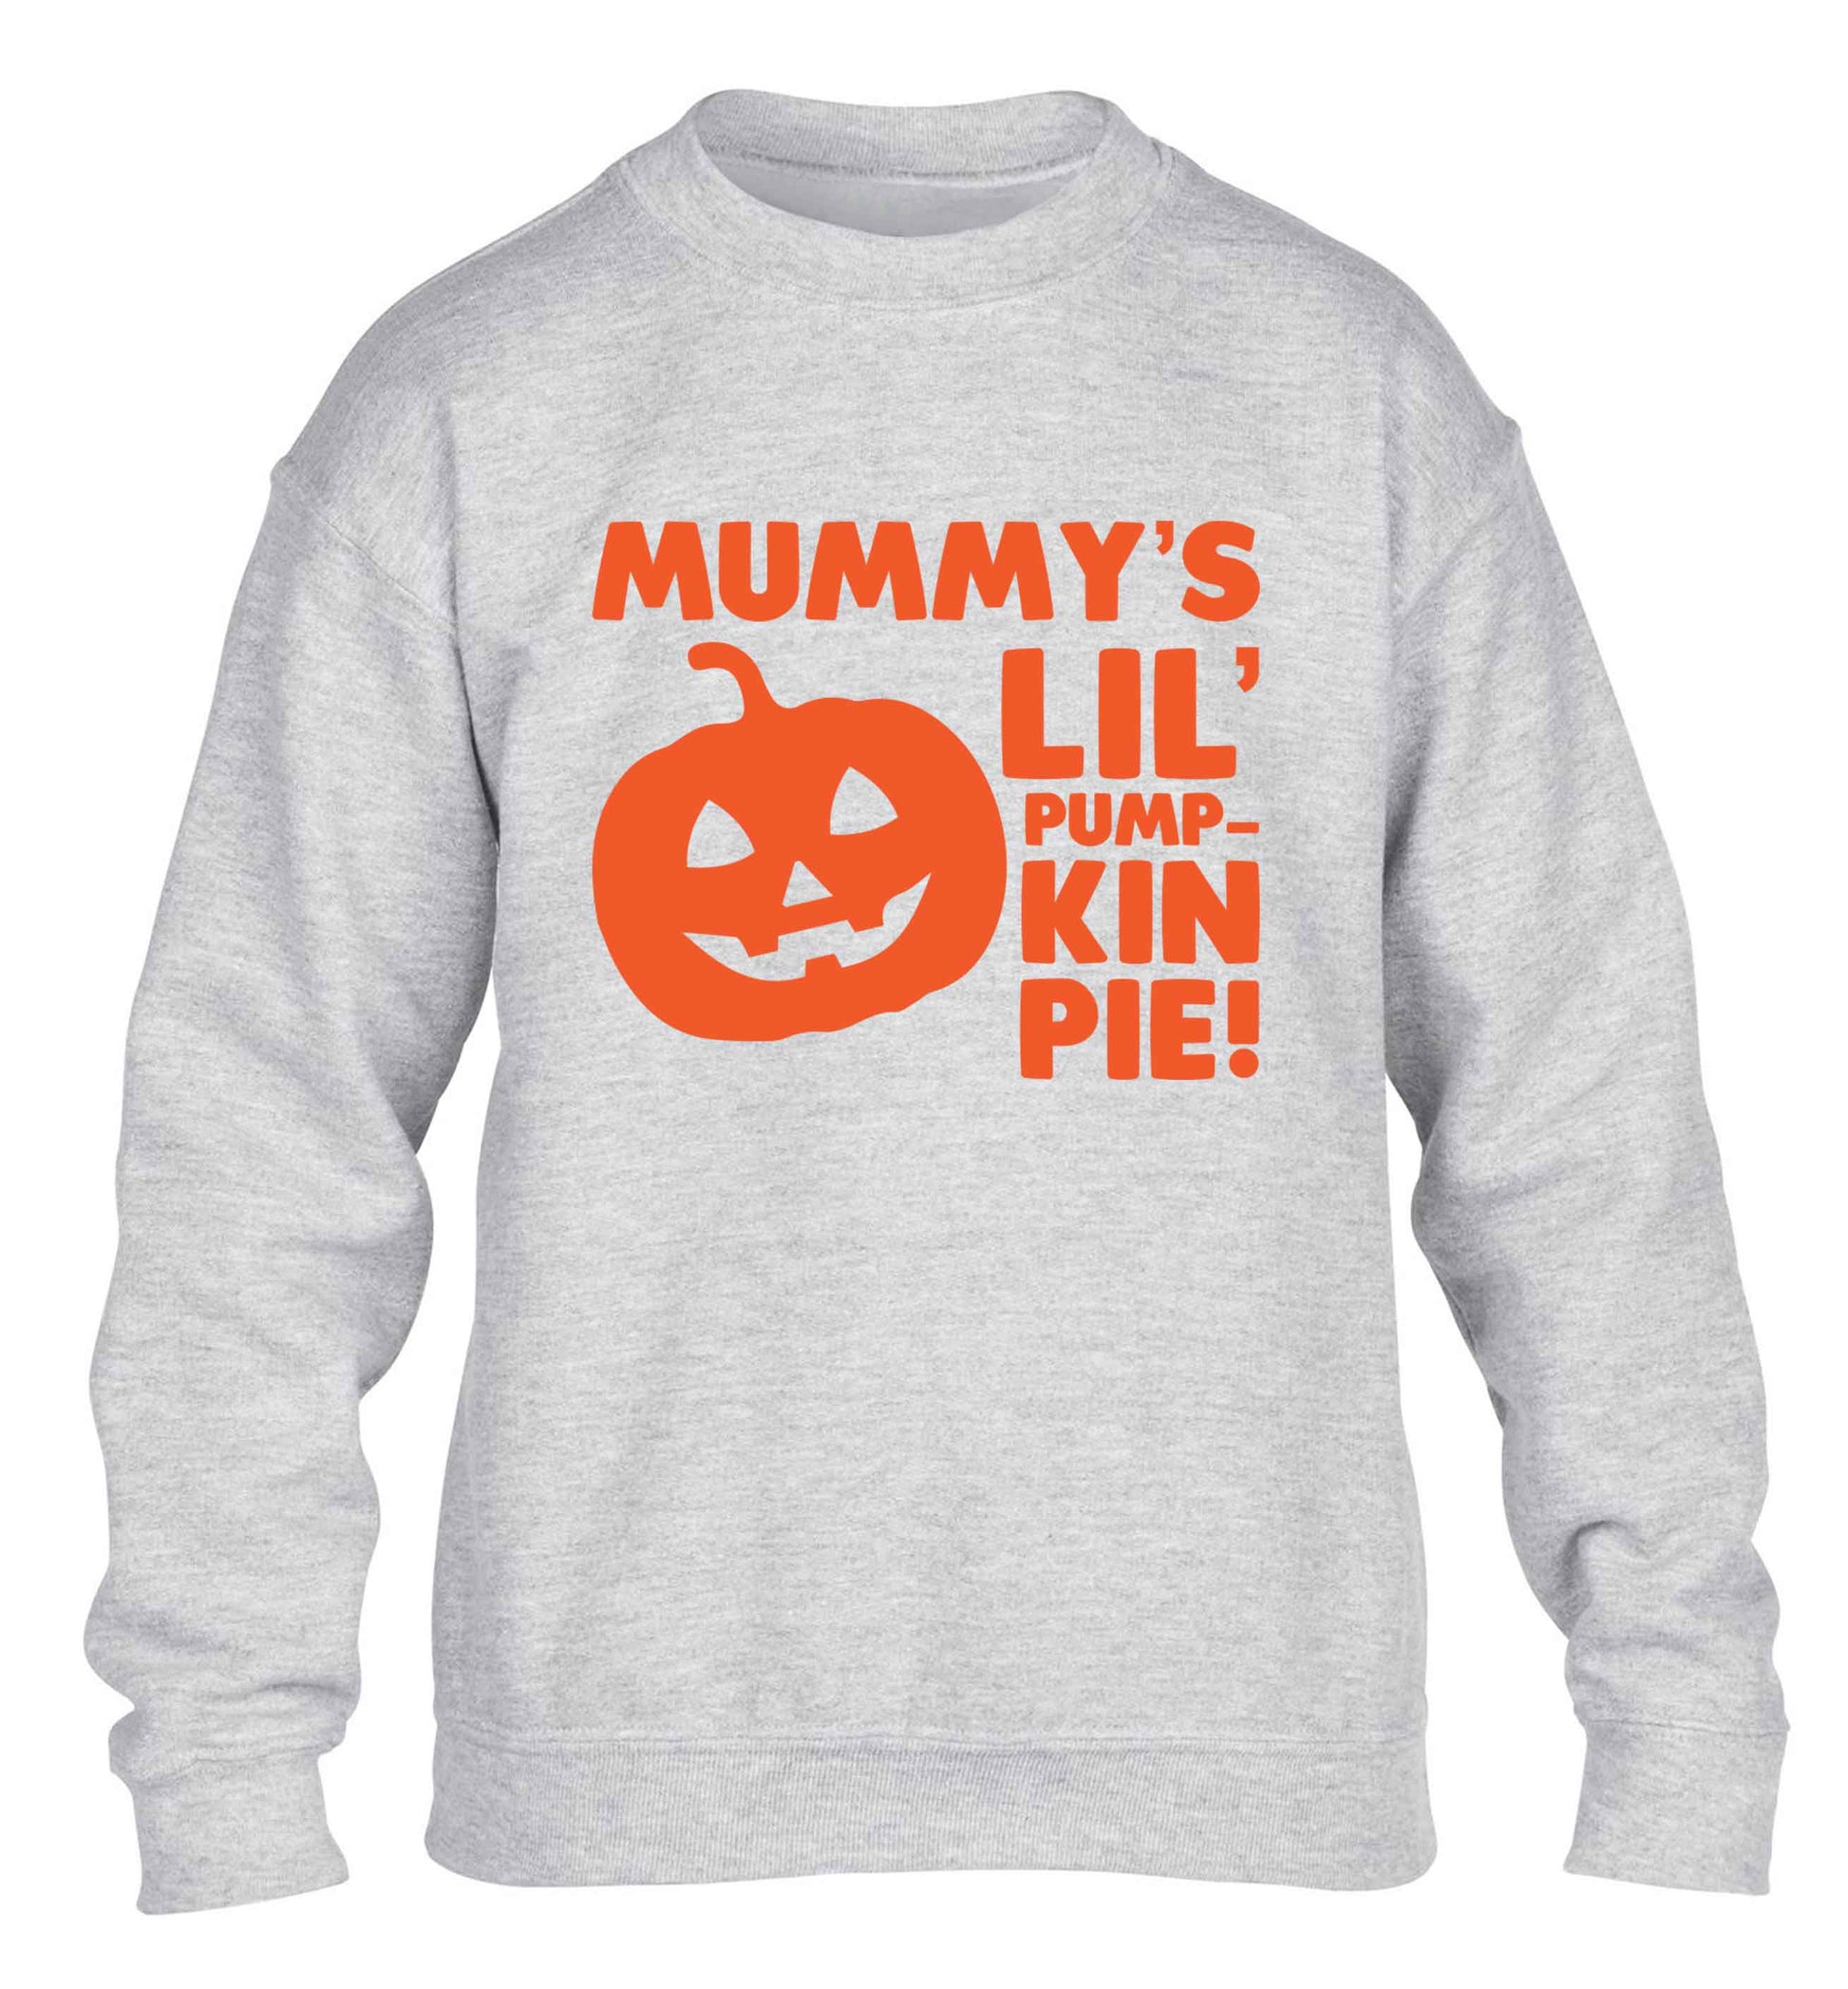 Mummy's lil' pumpkin pie children's grey sweater 12-13 Years